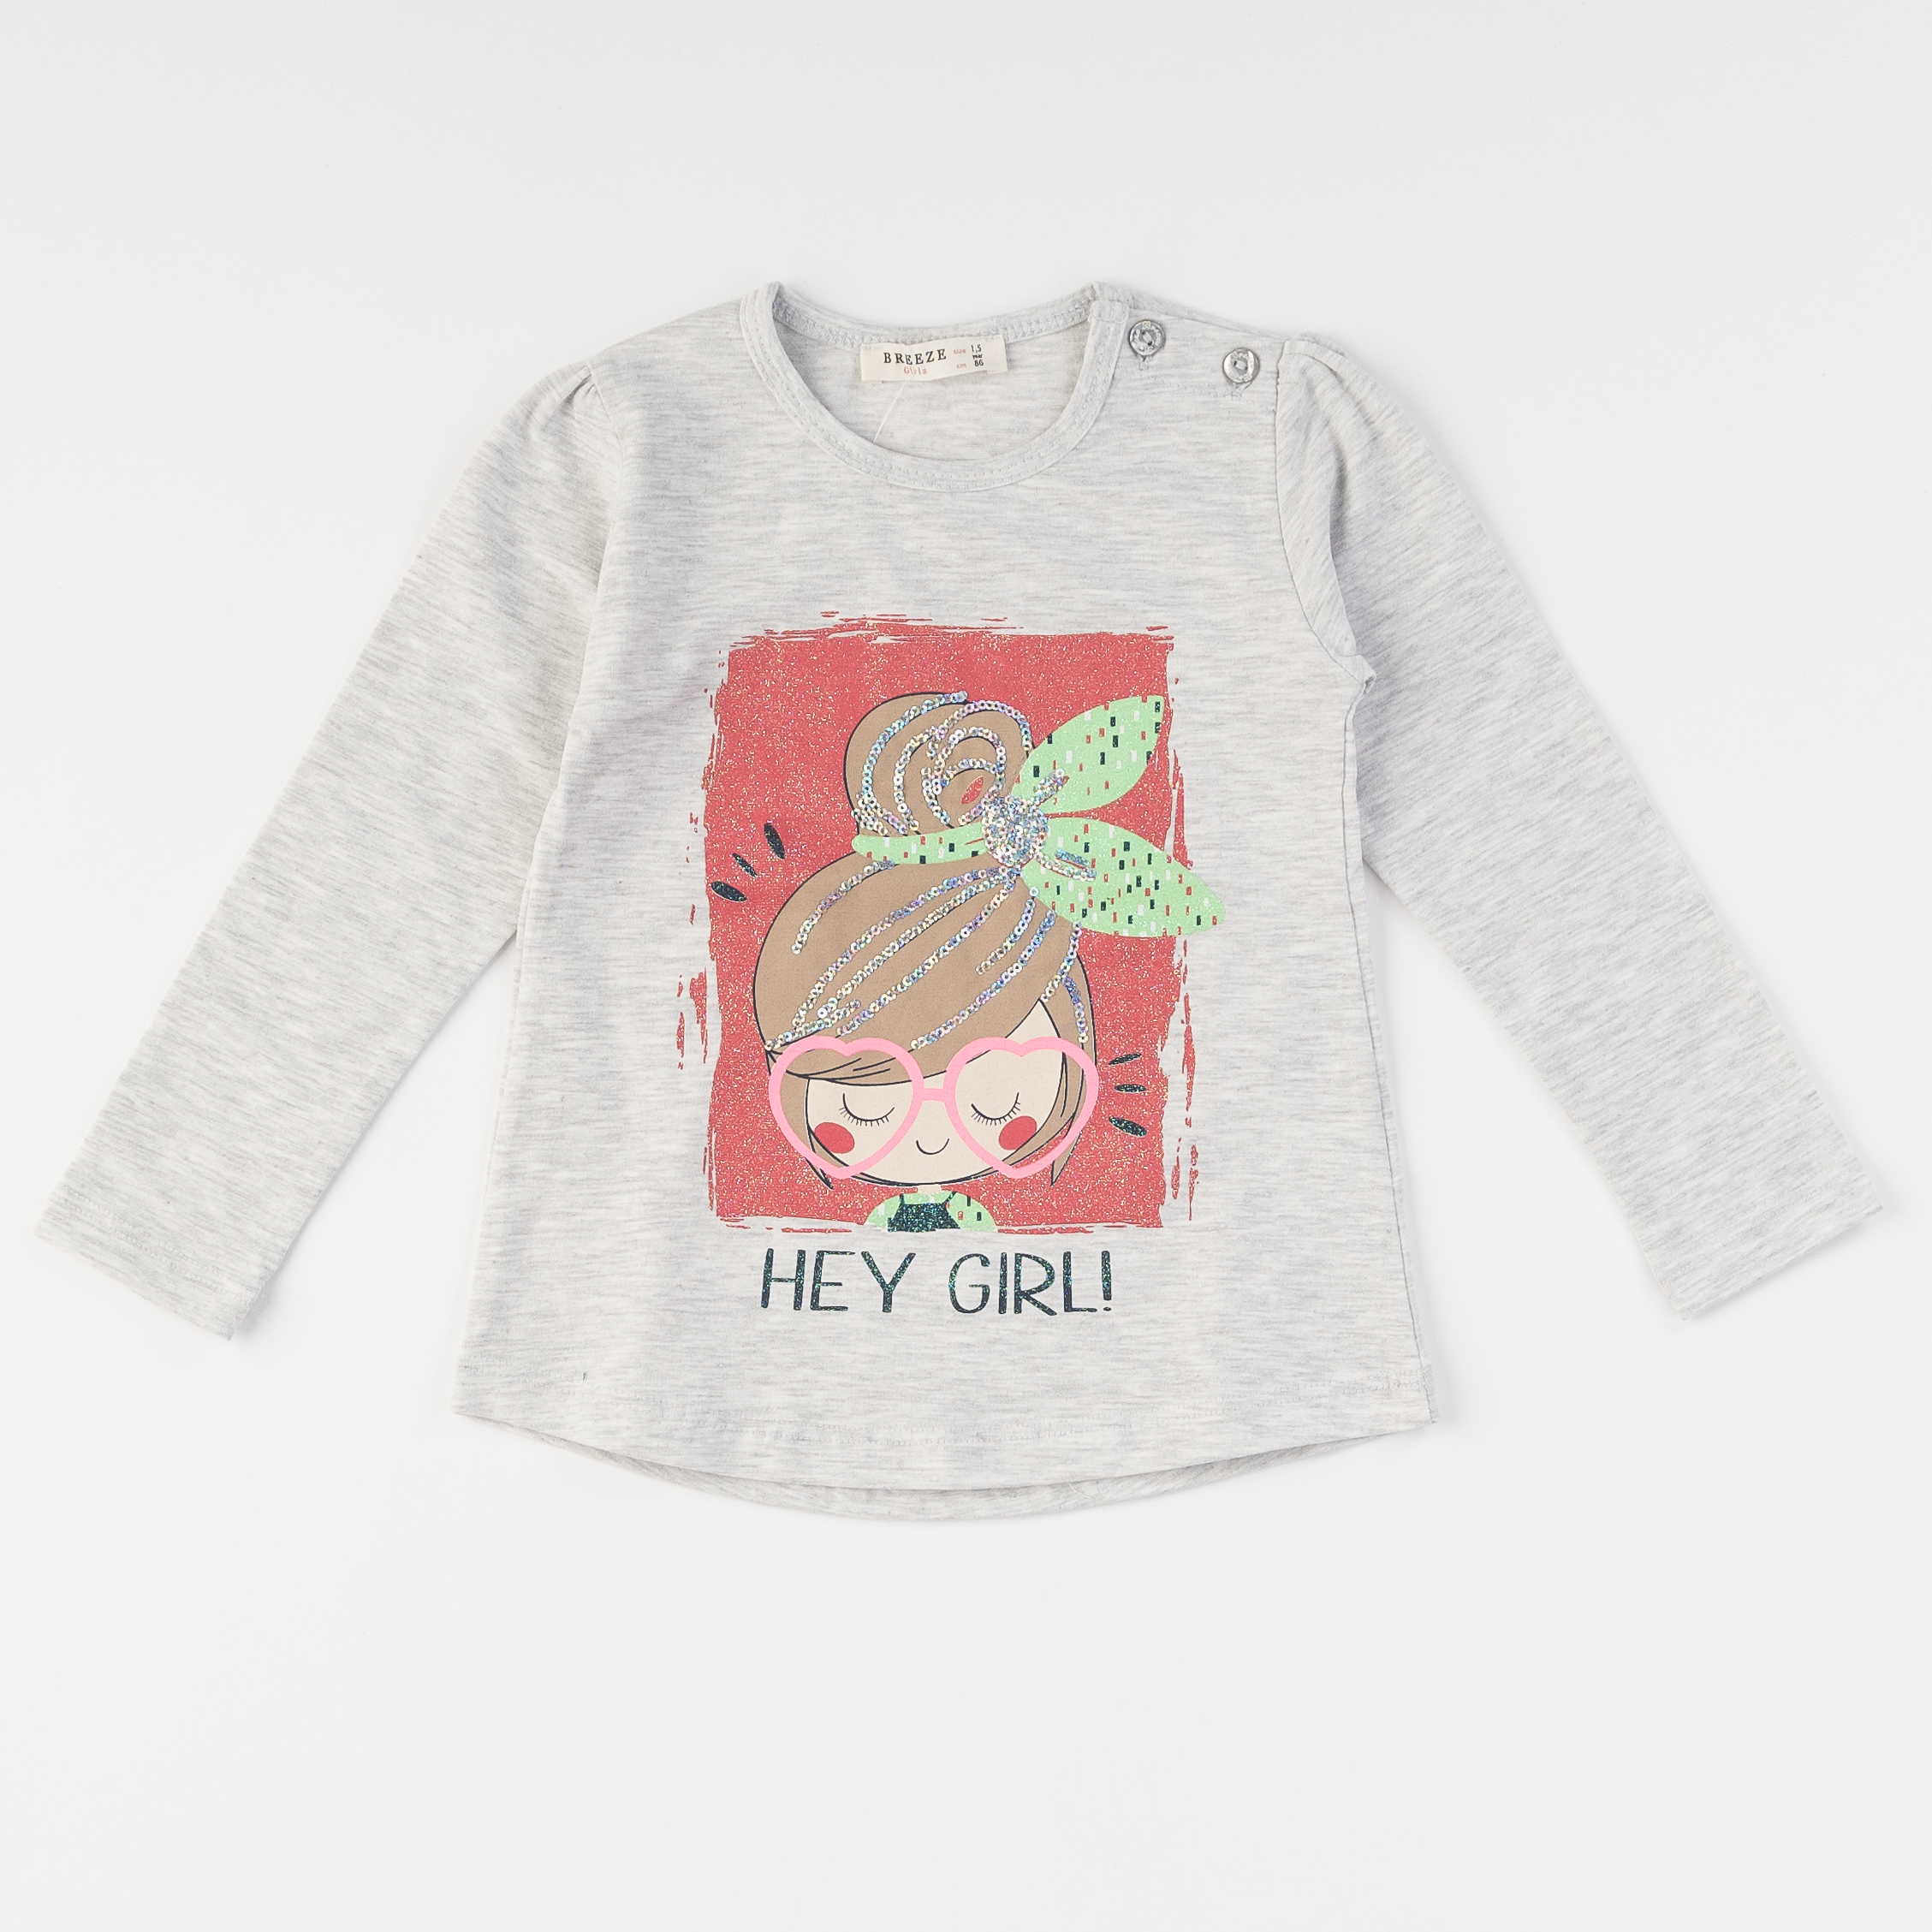 Παιδικό σετ με  μπλουζα και κολαν Για Κορίτσια  Hey girl   grey   -  Γκρί